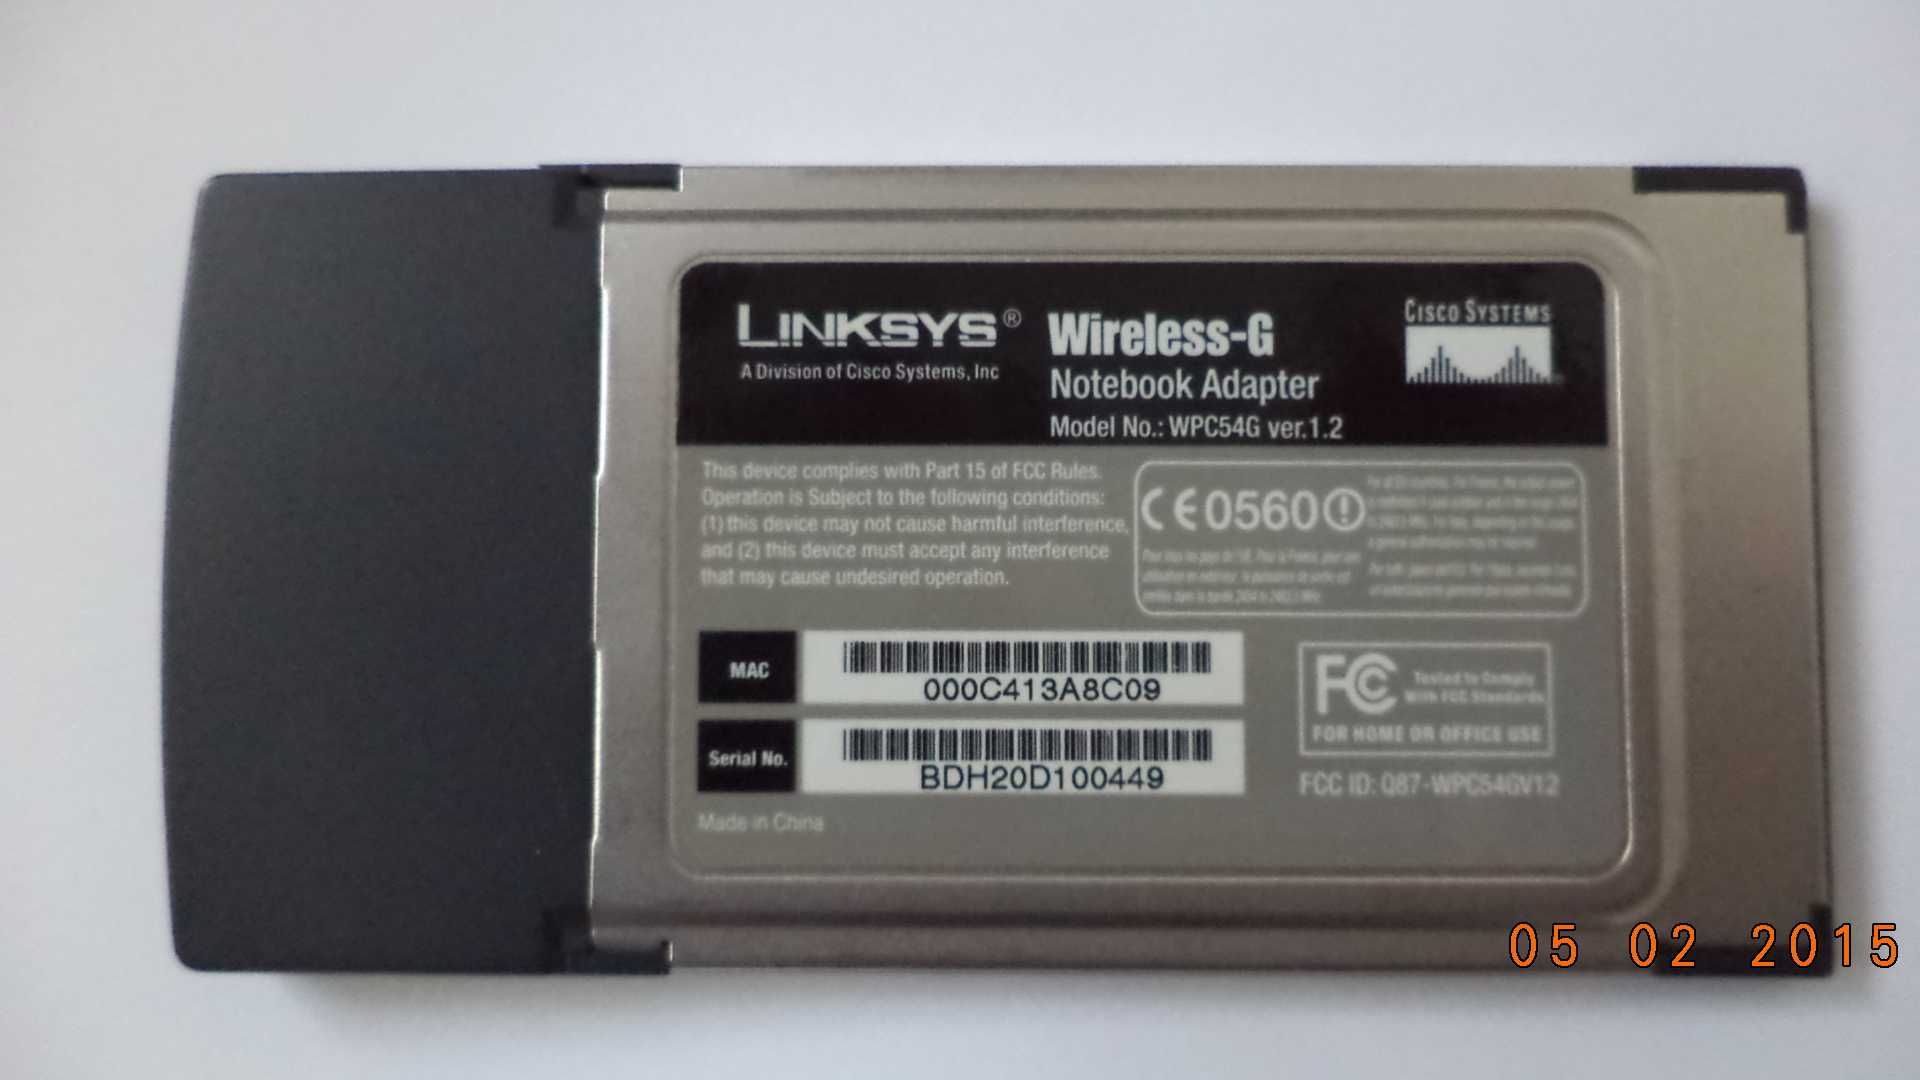 Wireless - G Notebook Adapter 2.4GHZ 802.11g - Linksys